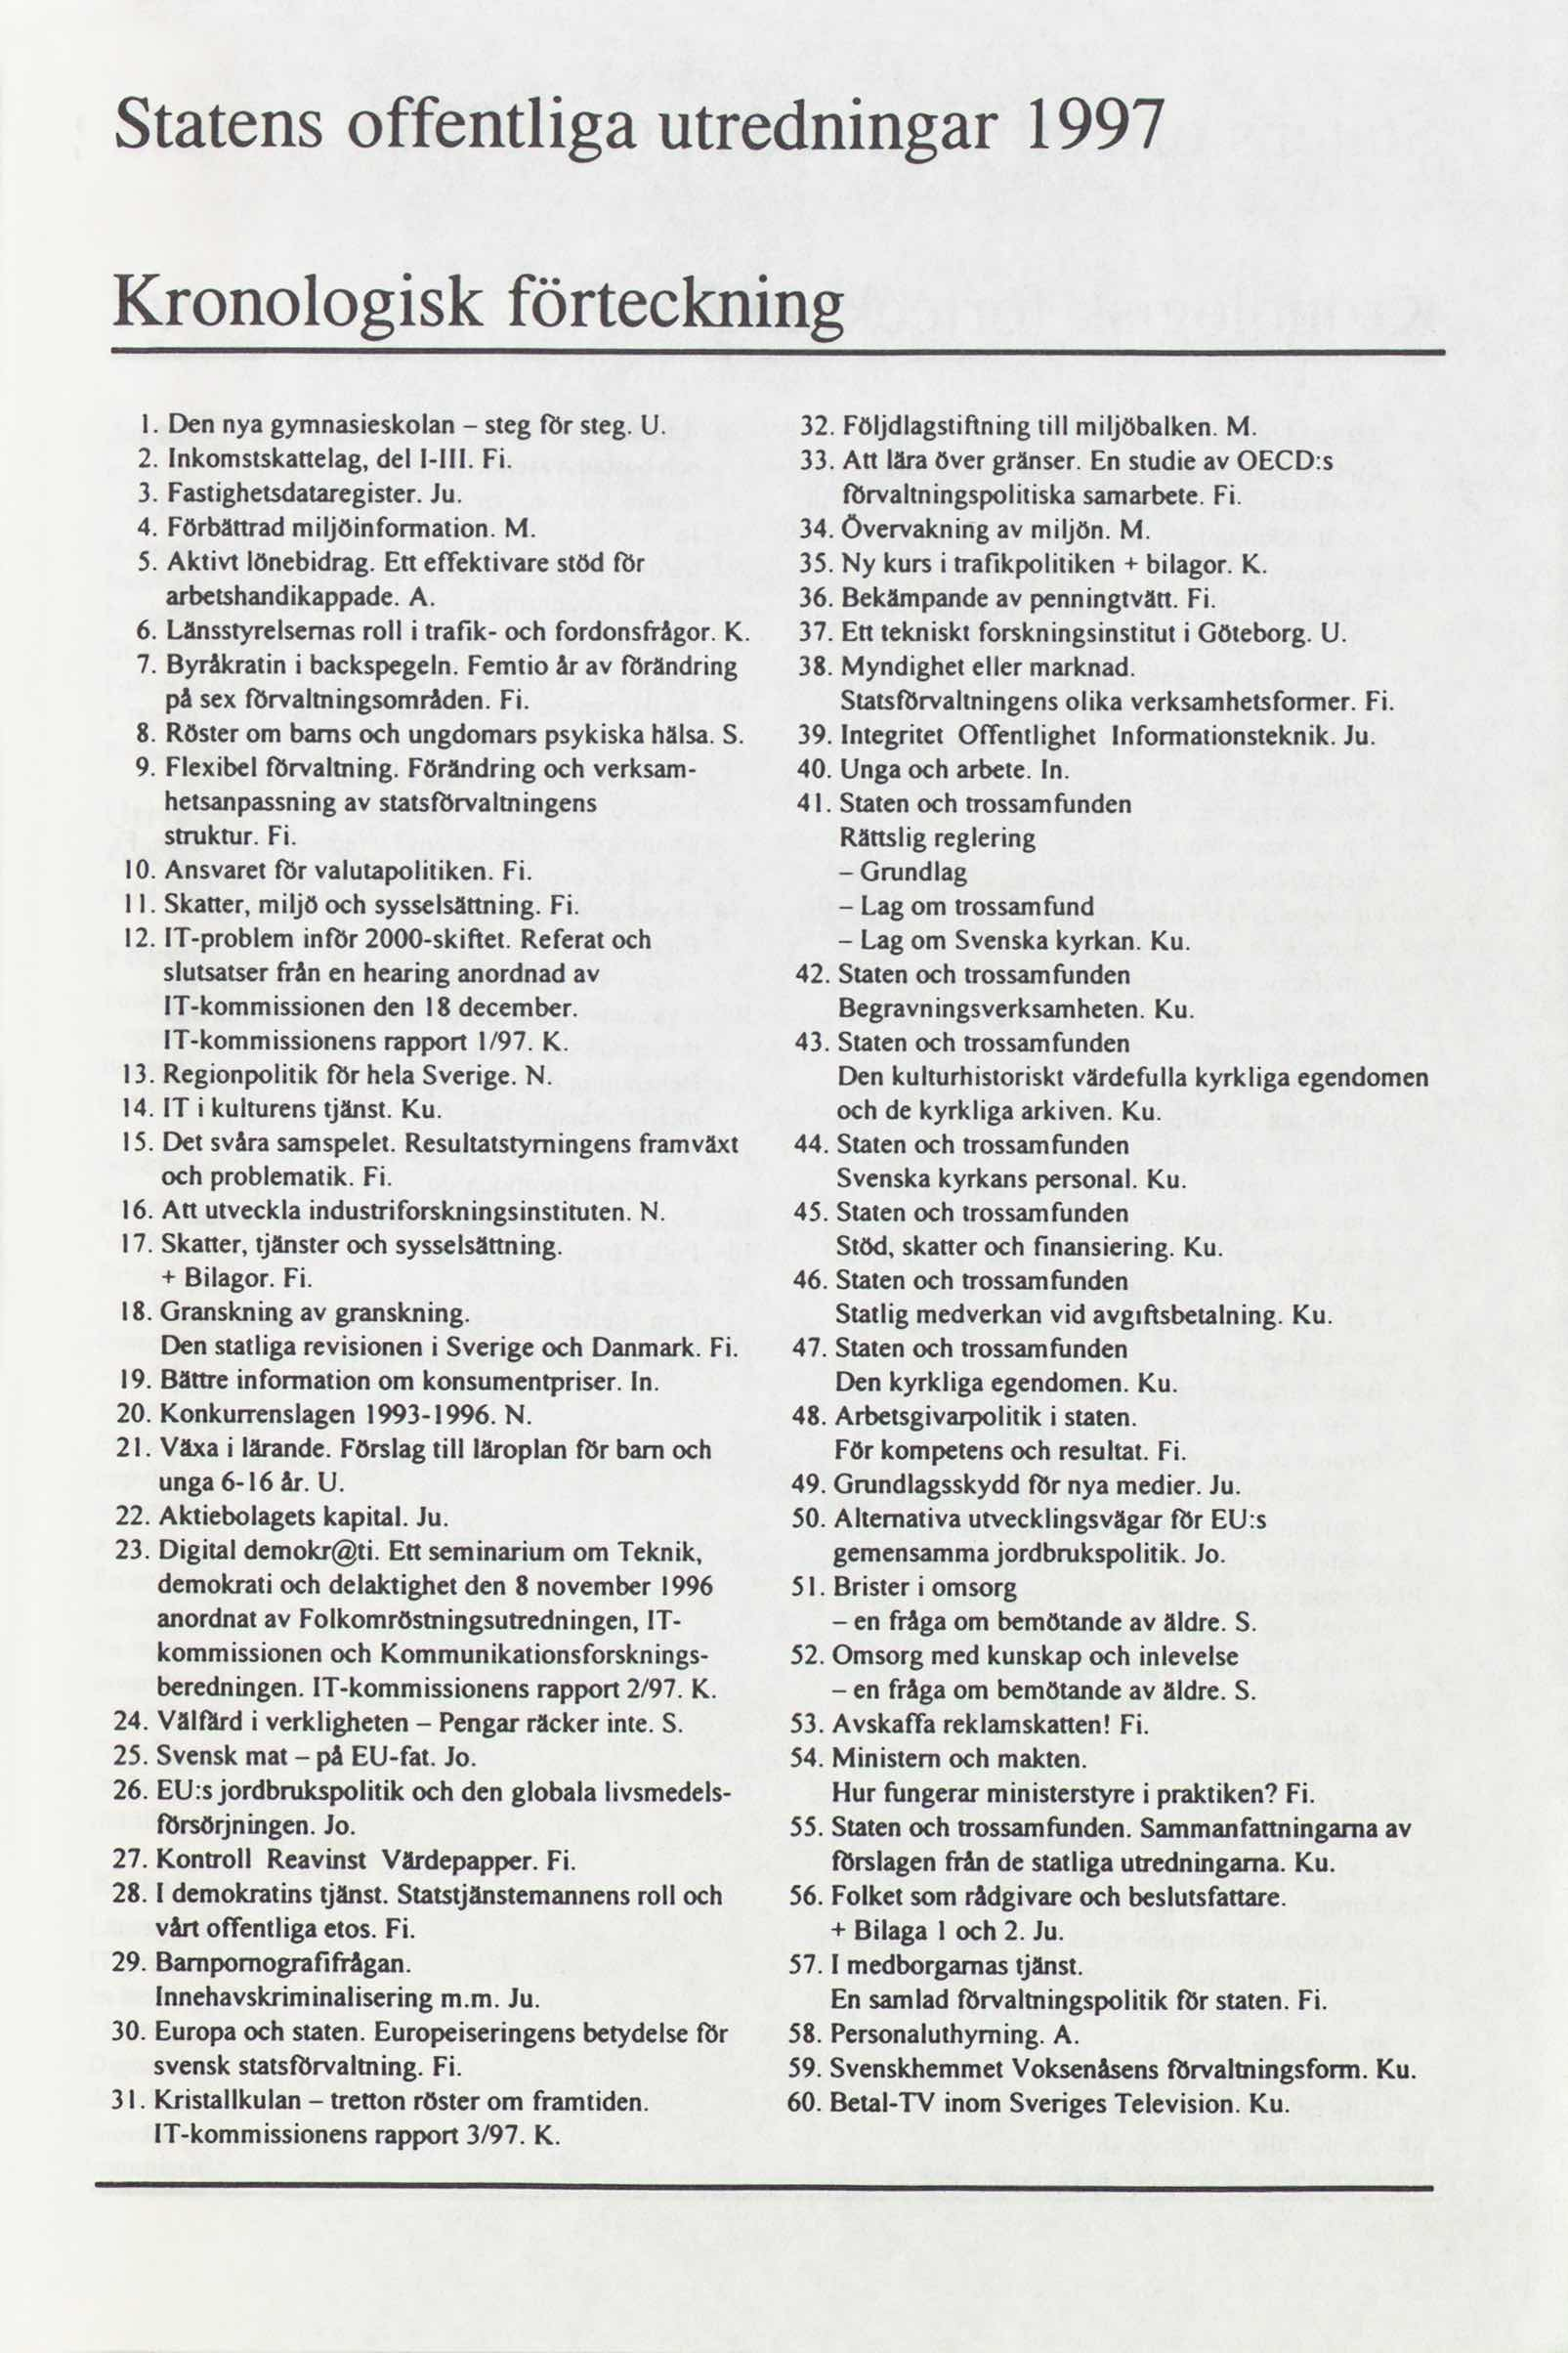 Statens offentliga utredningar 1997 Kronologisk förteckning Dennyag, nasieskolan - stegförsteg. U. 32 Följdlagstiñning till. miljöbalken.m. lnkomstskattelag, dell-lll. Fi. 33.Att läraövergränser.